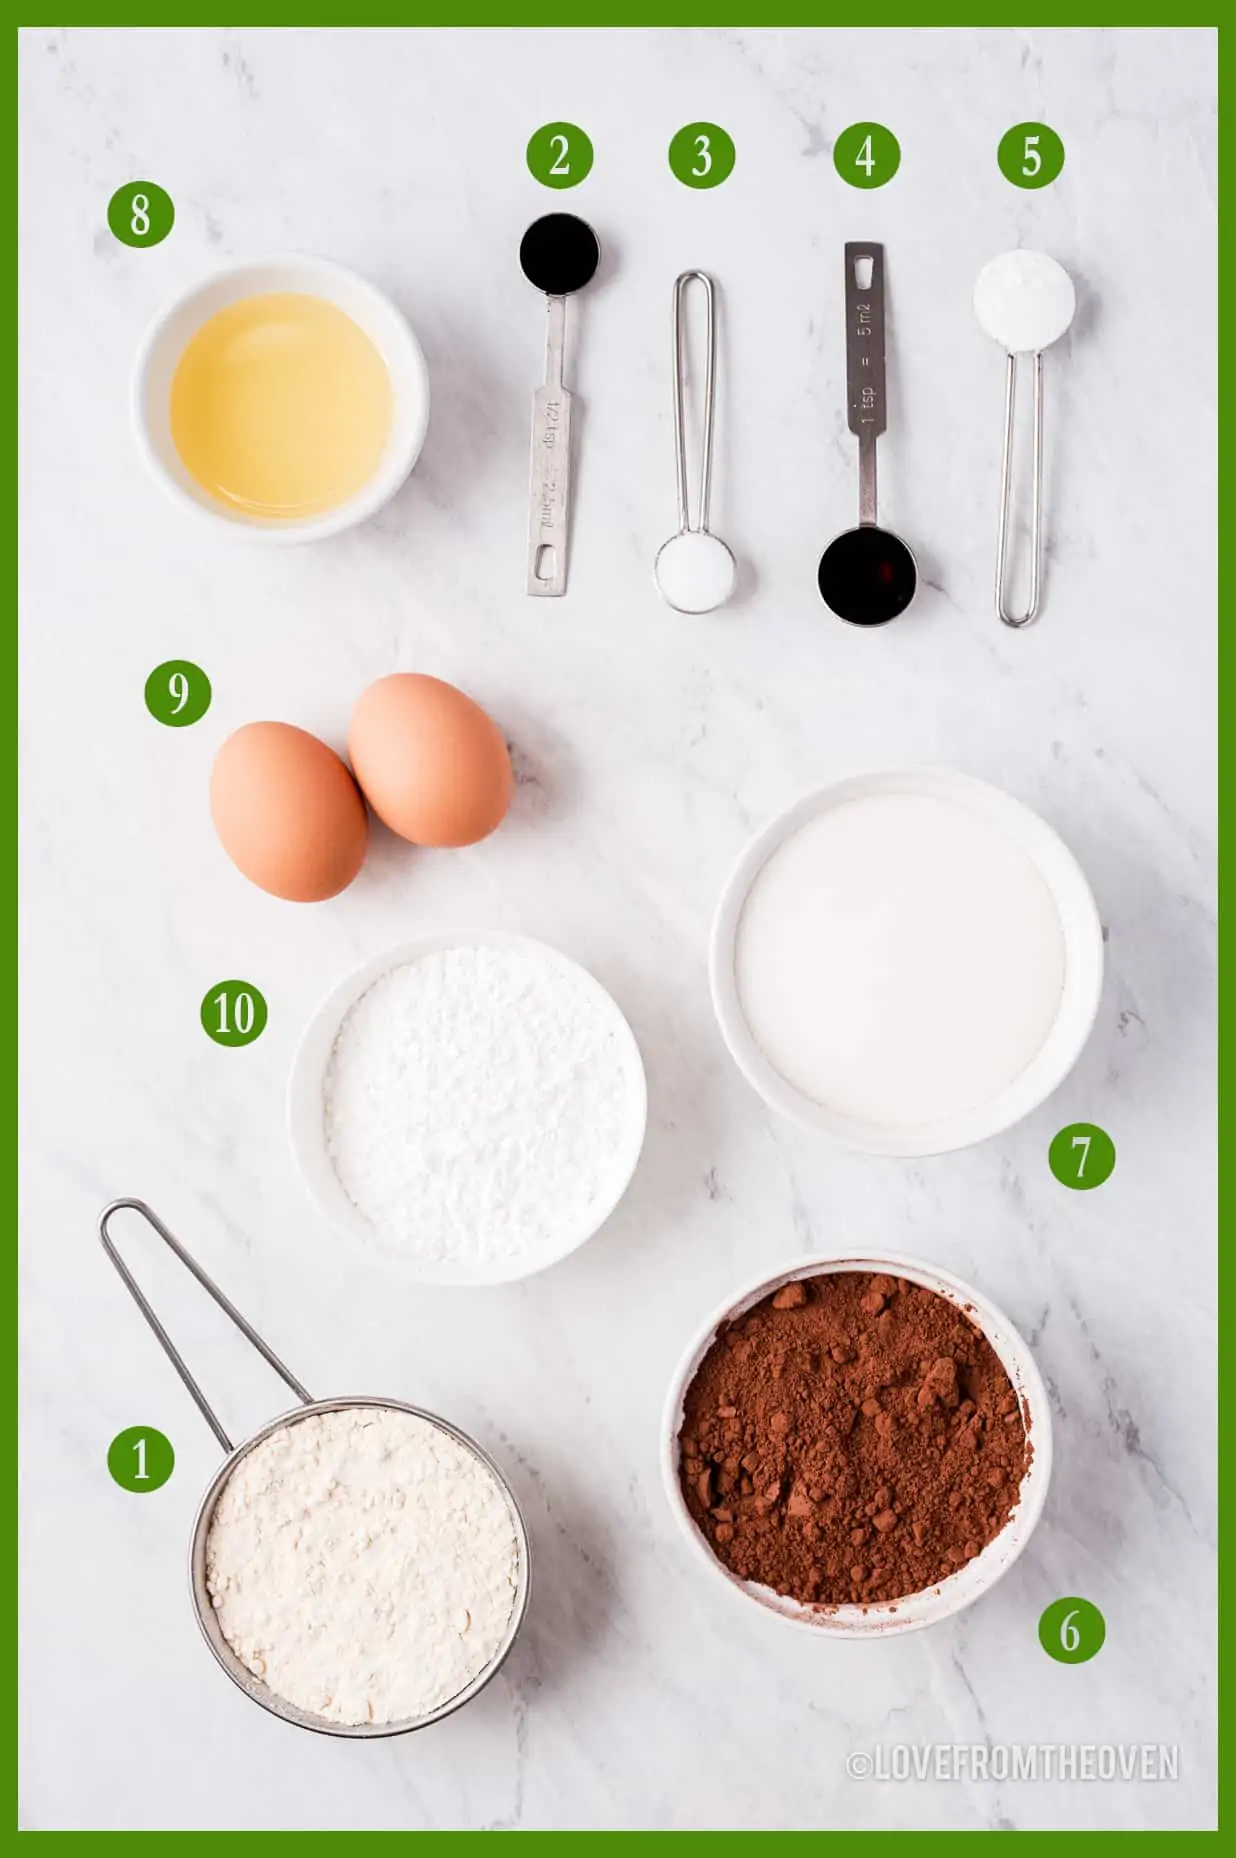 Ingredients for chocolate crinkle cookies